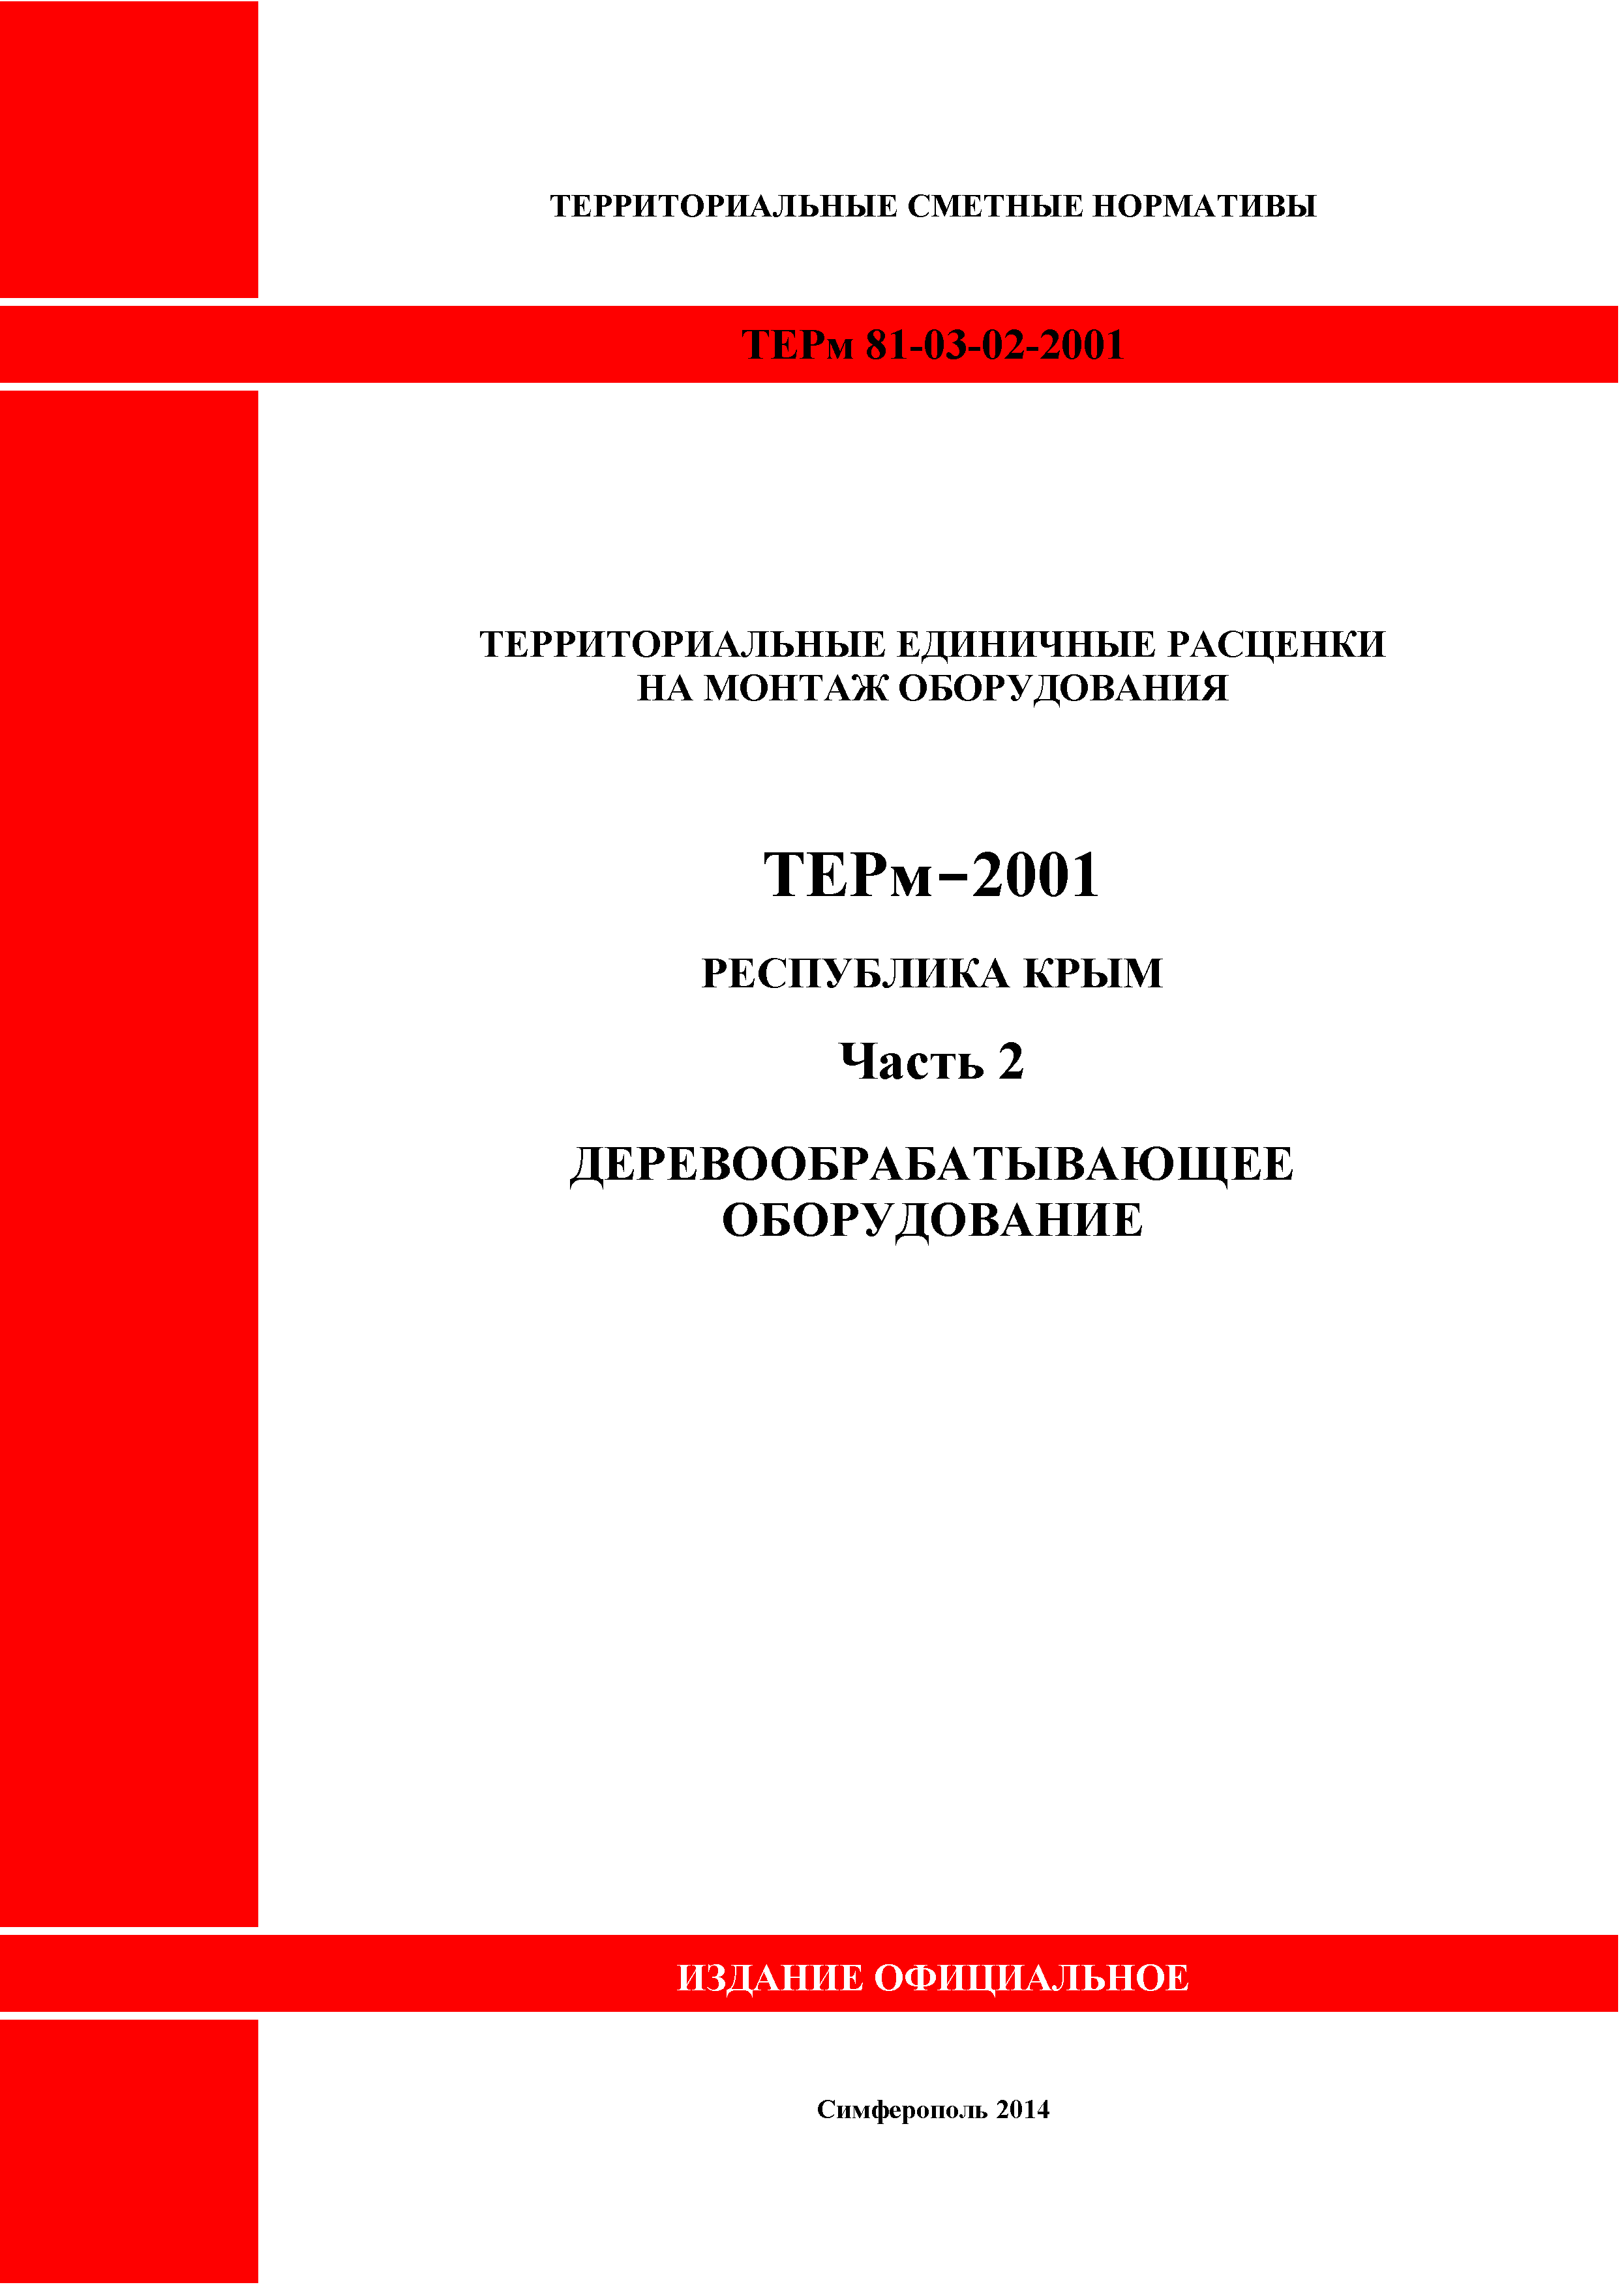 ТЕРм 2001 Республика Крым